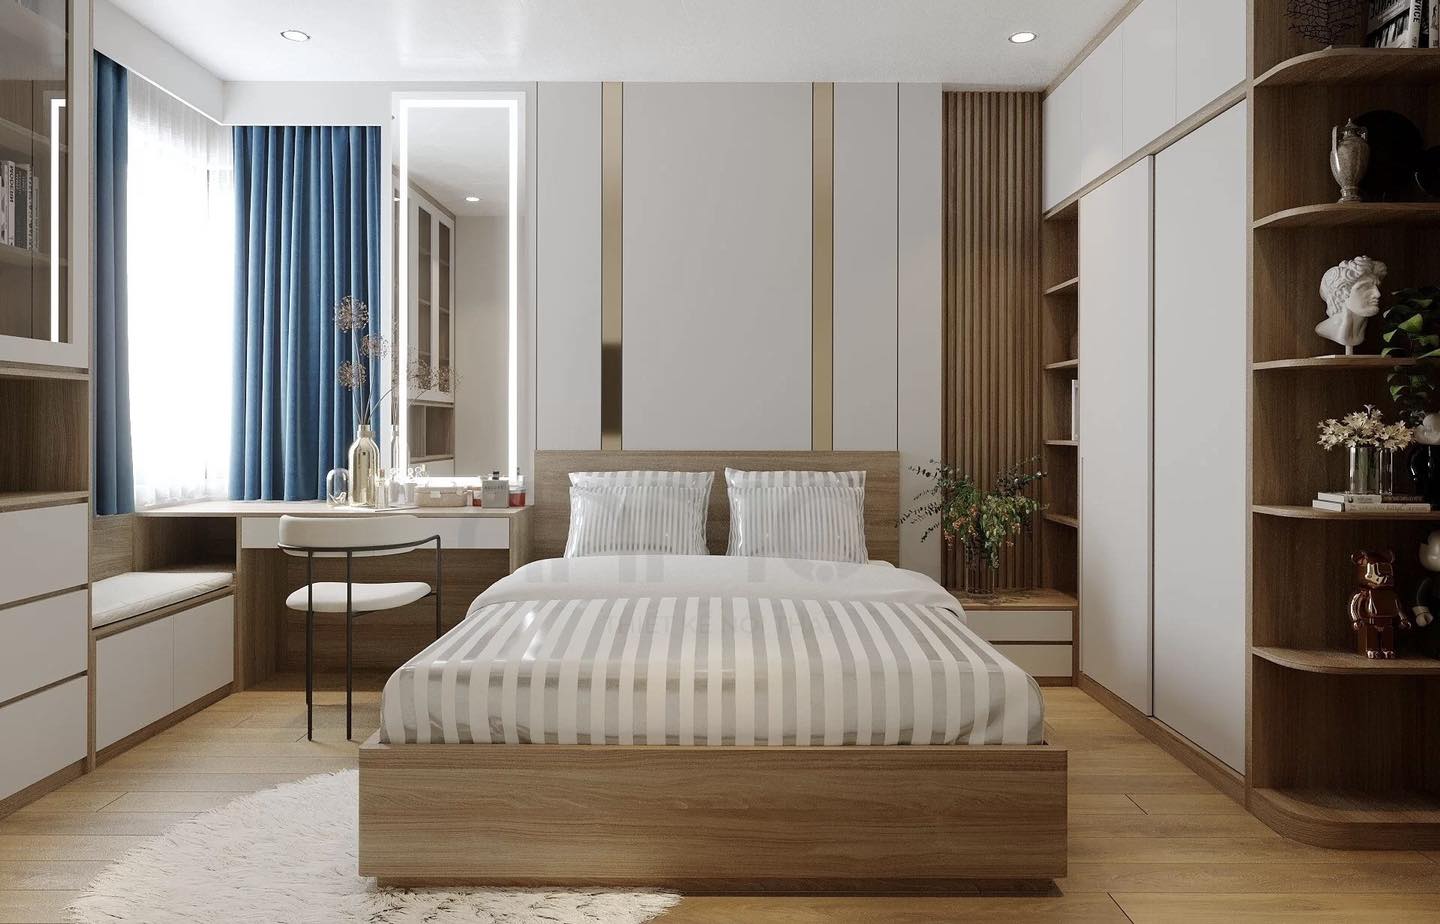 Cách đặt giường trong phòng ngủ tốt cho sức khỏe và “chuẩn” phong thủy